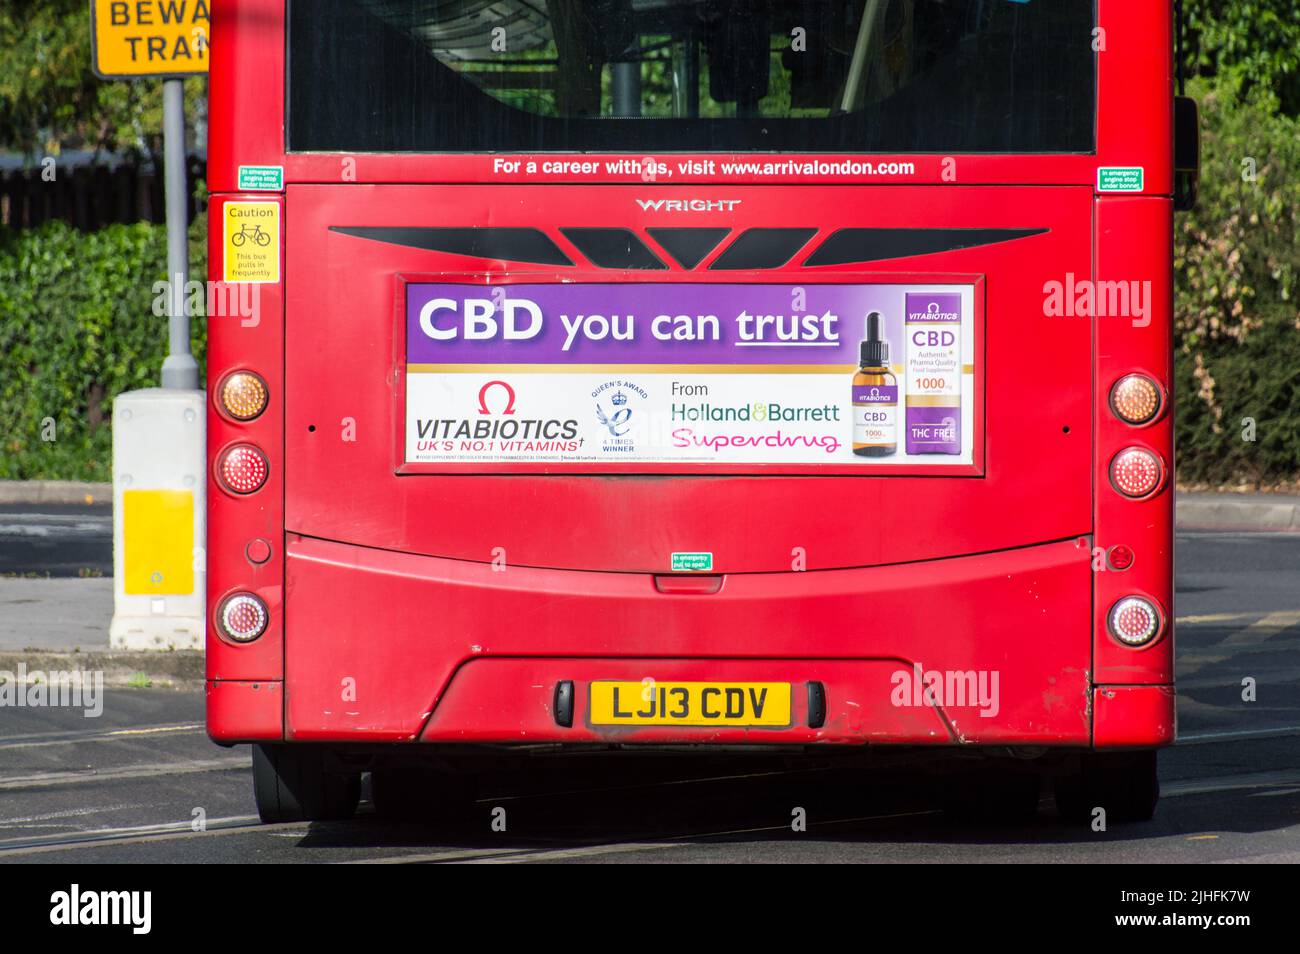 Publicité pour le pétrole du CBD à l'arrière d'un bus londonien Banque D'Images